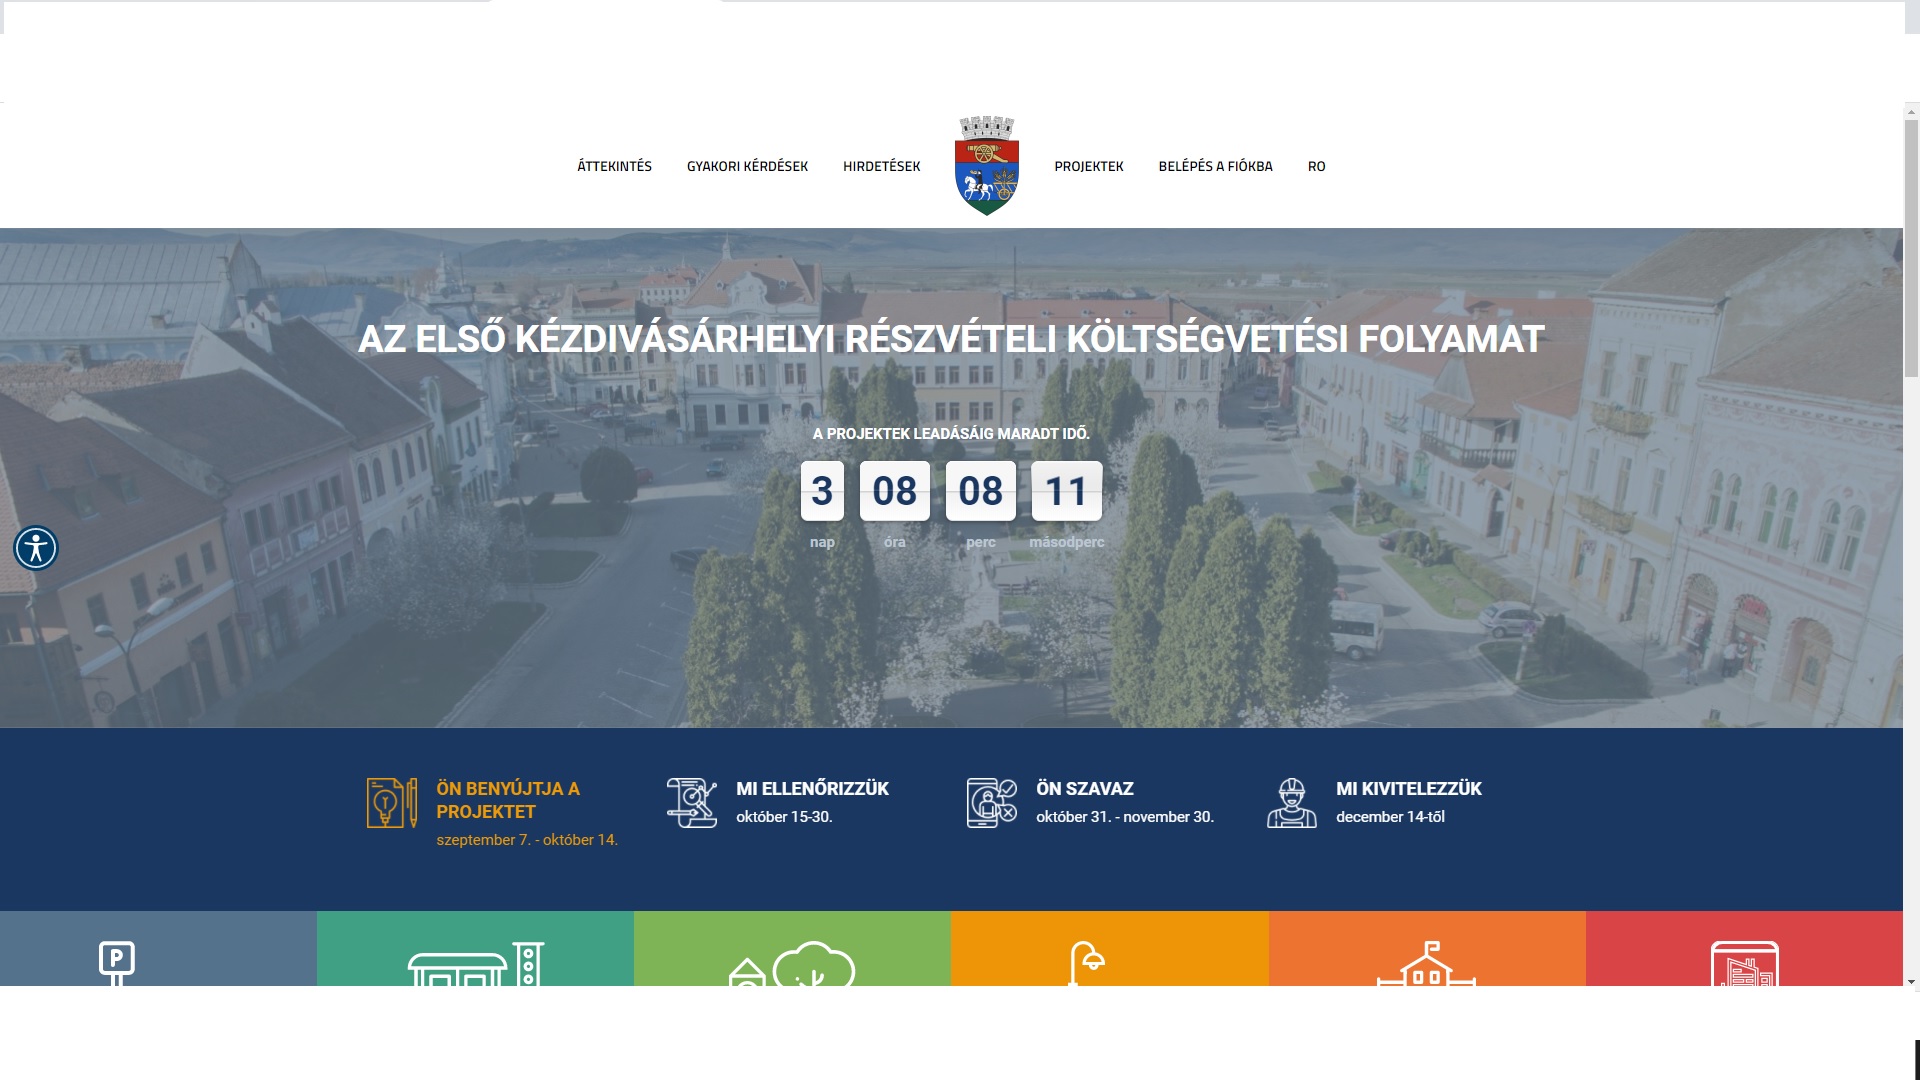 O nouă posibilitate de depunere de proiecte în Târgu Secuiesc